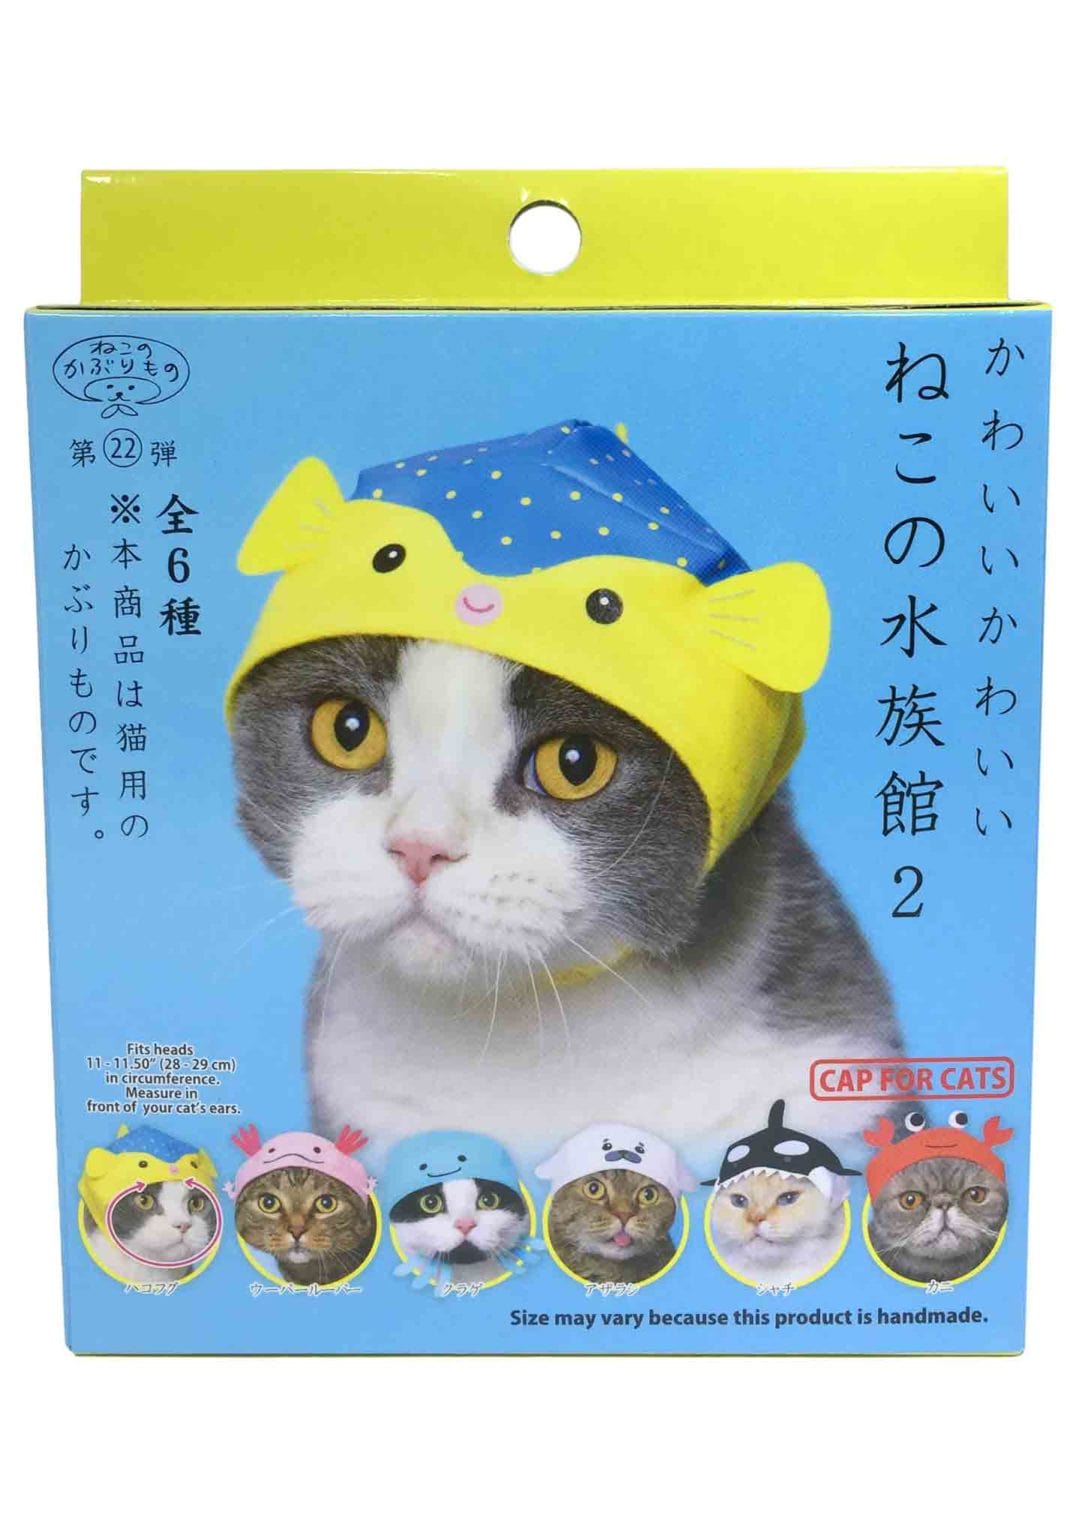 Clever Idiots Aquarium V2 Cat Cap Surprise Box Kawaii Gifts 4580045301233